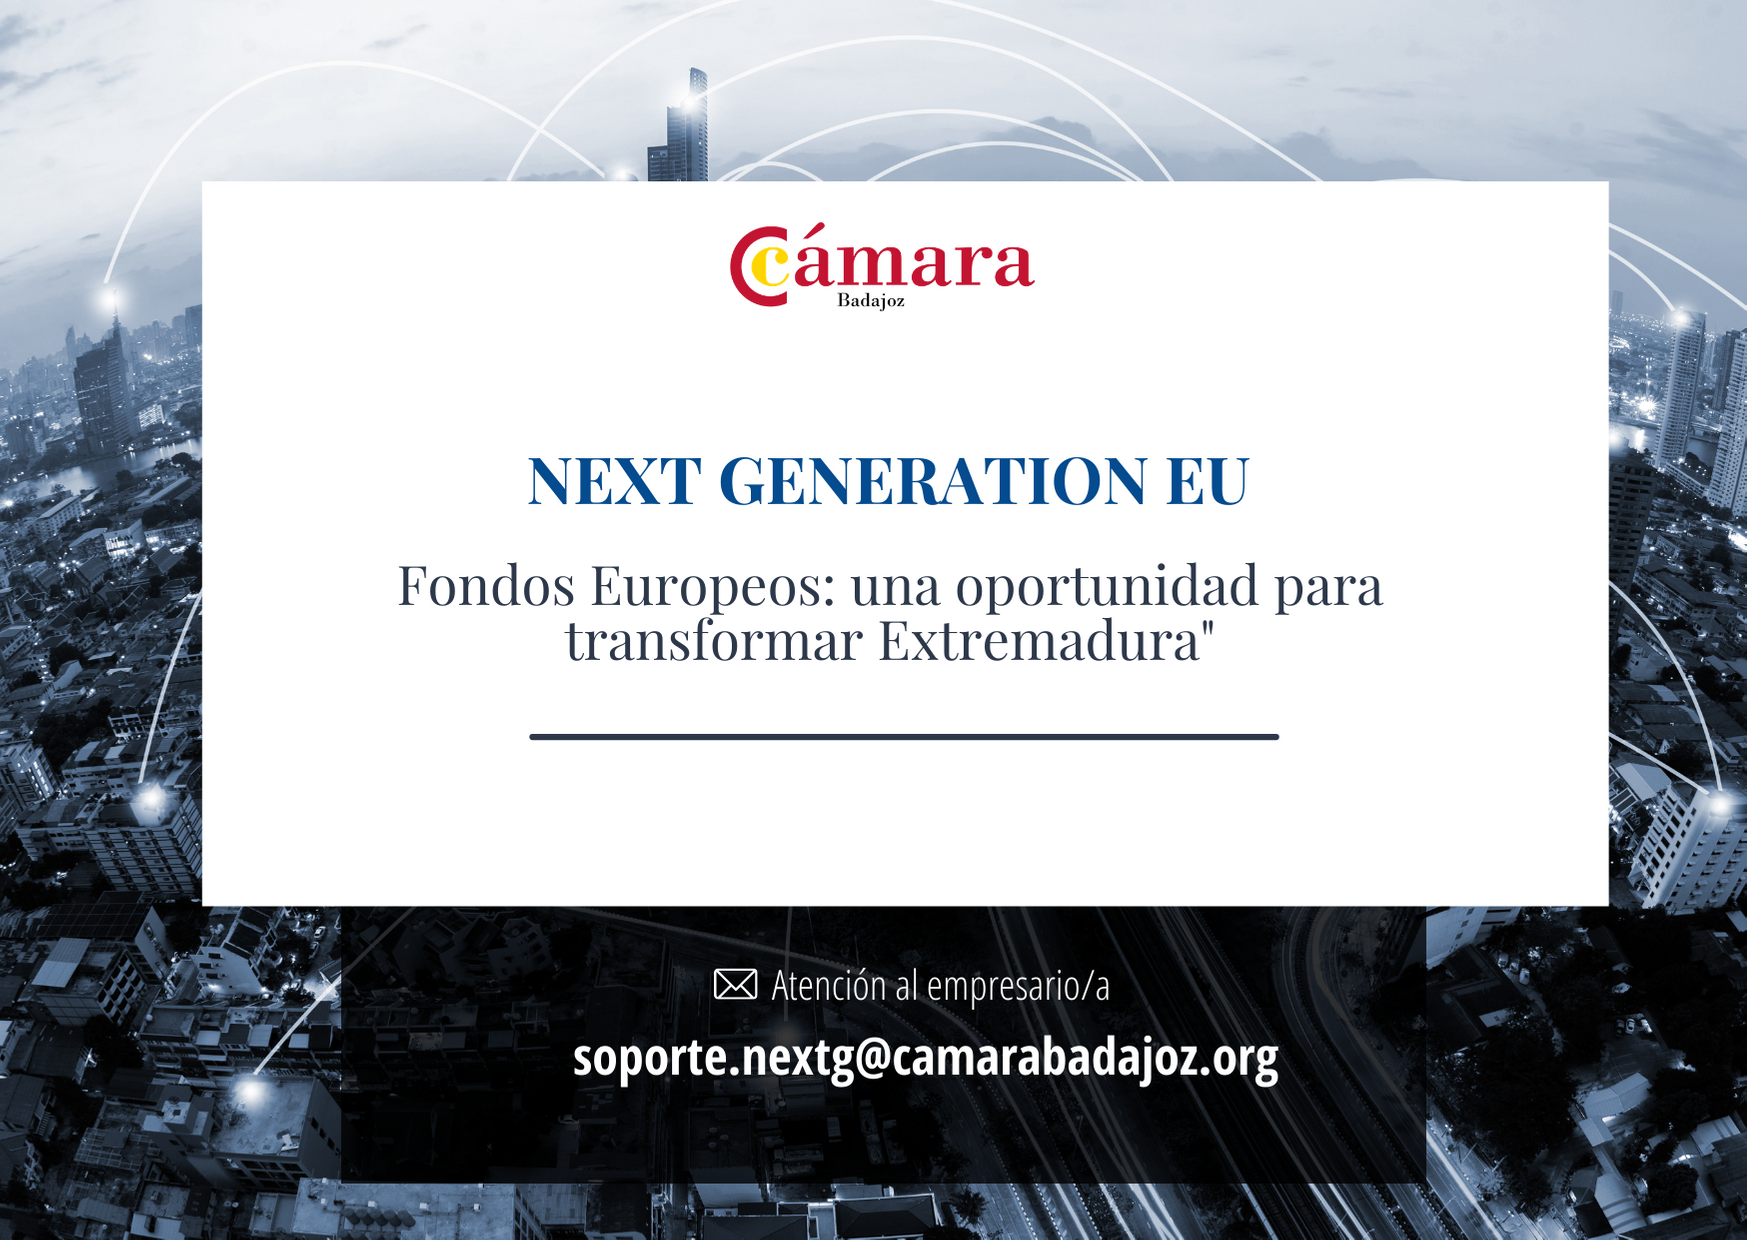 Oficina técnica Fondos Next Generation EU